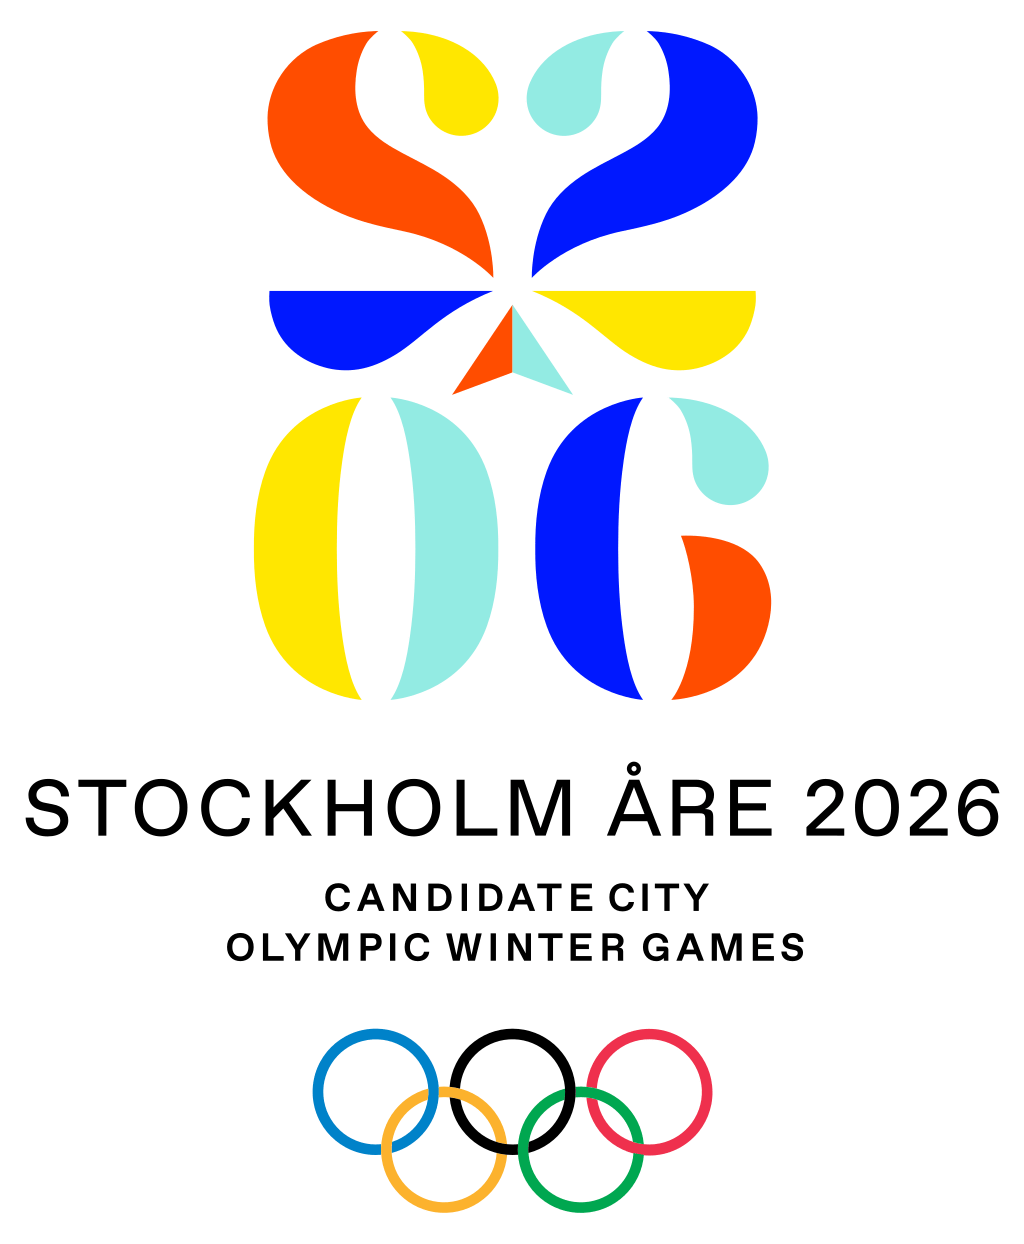 斯德哥尔摩申办 2026奥运会标志,灵感来源于瑞典传统风格图案 kurbits